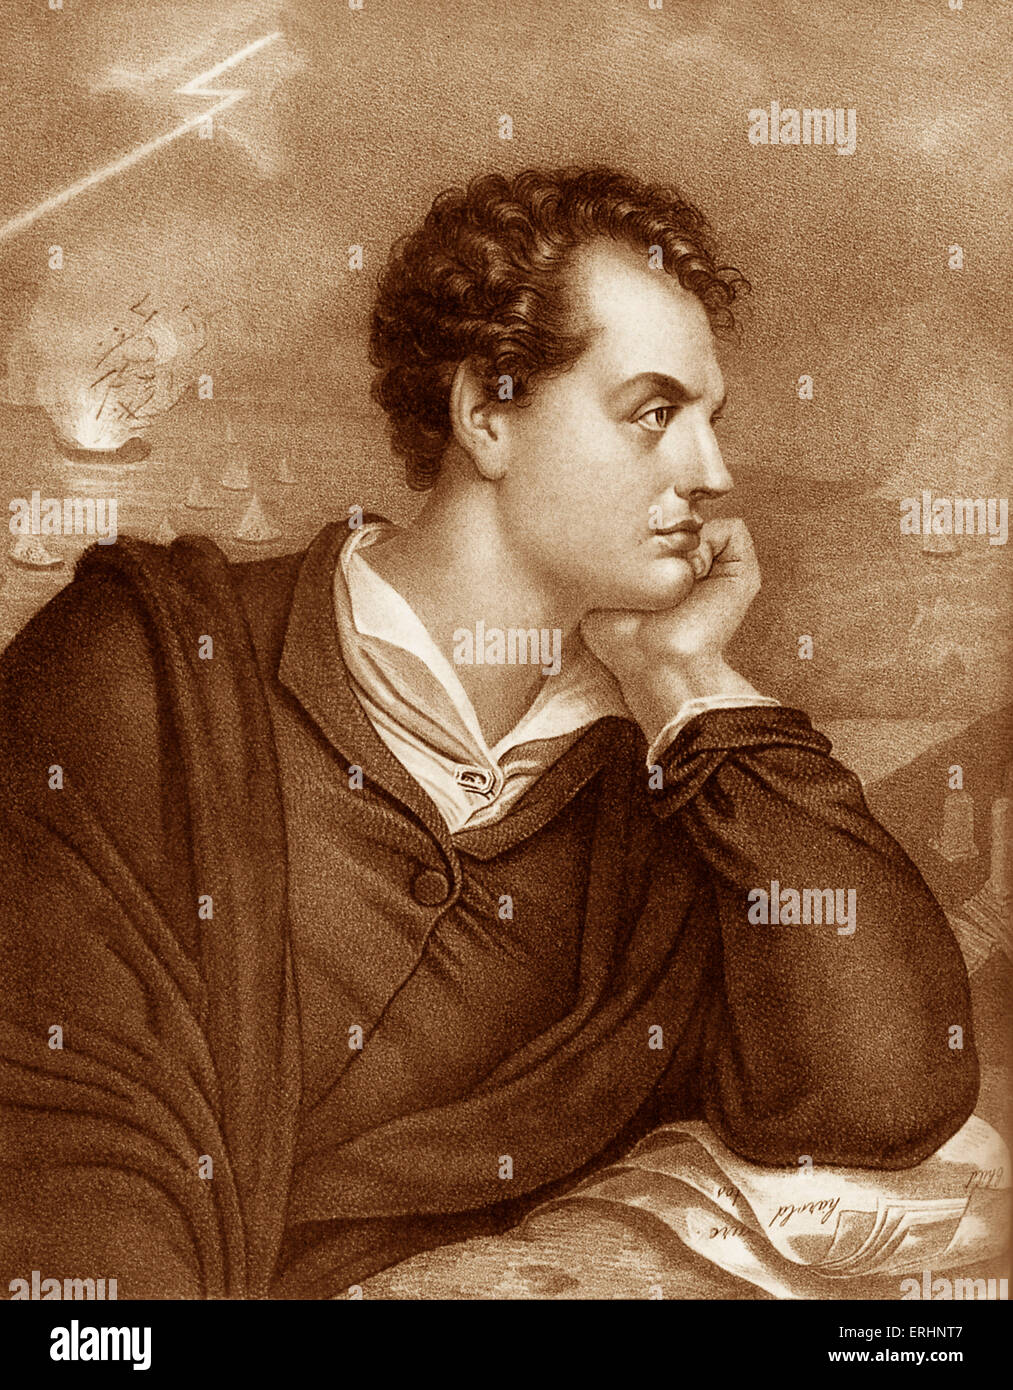 George Gordon Byron, 6e baron Byron. Portrait du poète britannique connu sous le nom de Lord Byron. 22 janvier 1788 - 19 Avril 1824 Banque D'Images